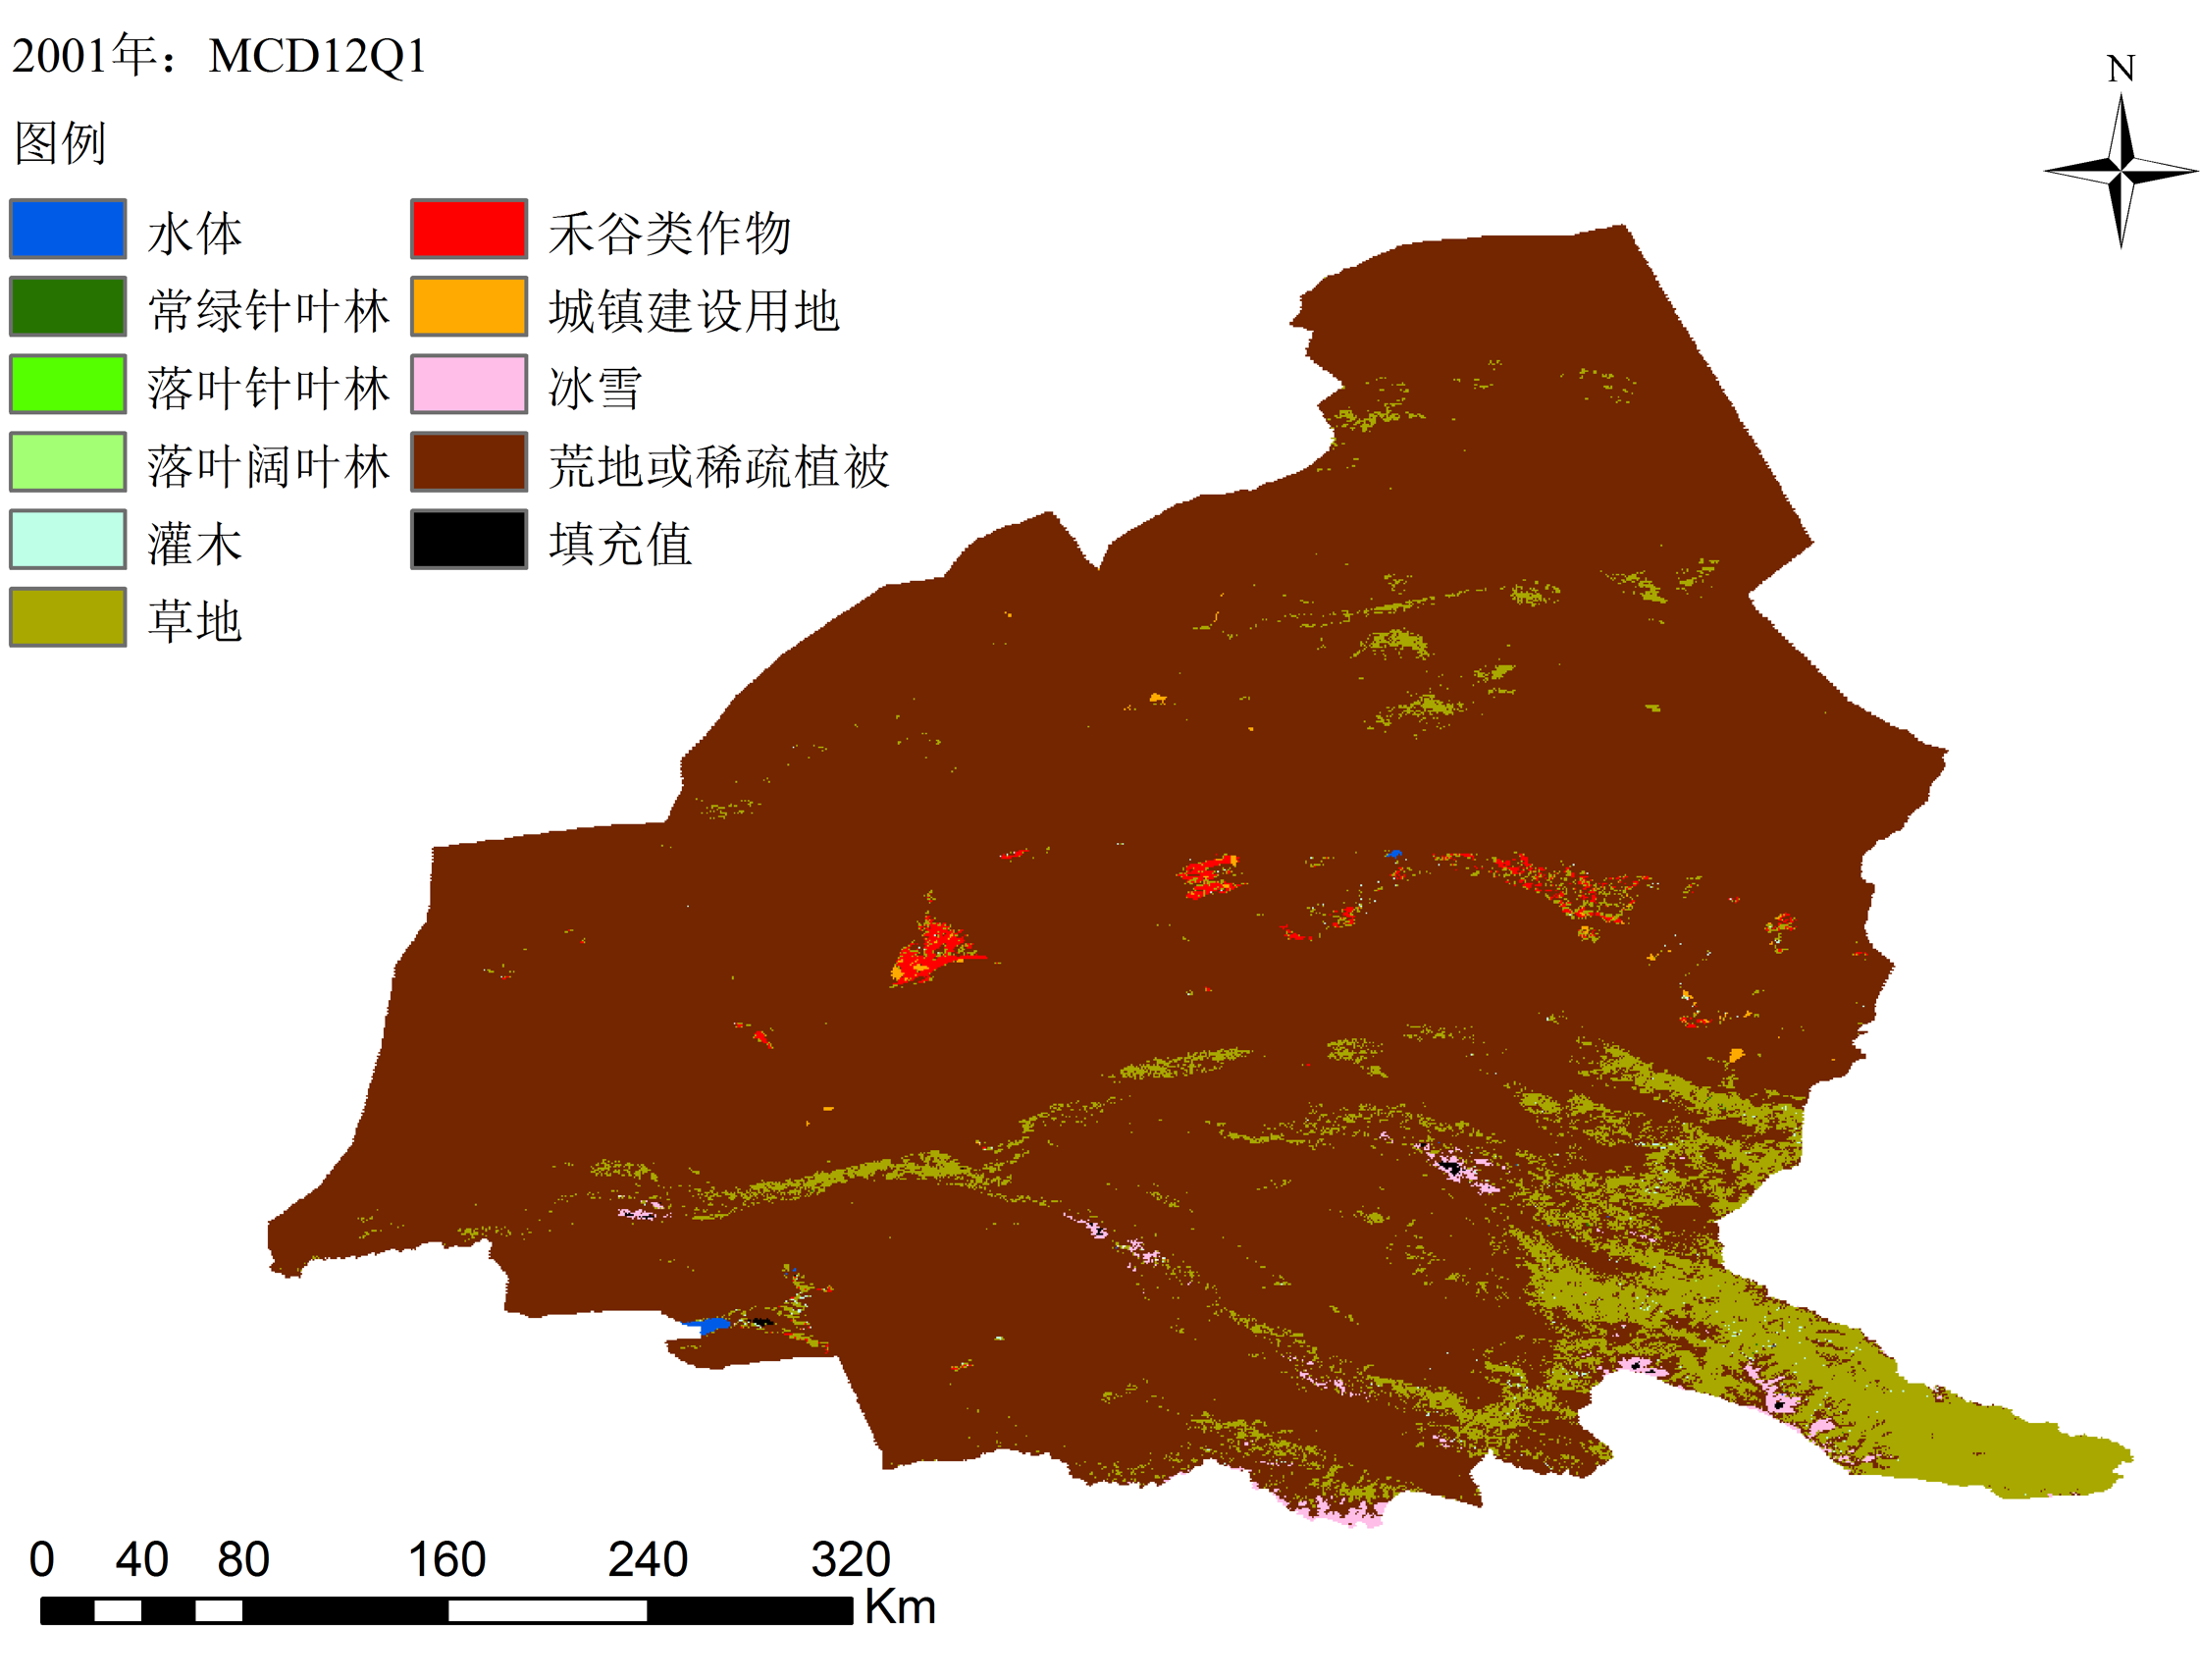 The land use data of Northwestern China (2000-2010)